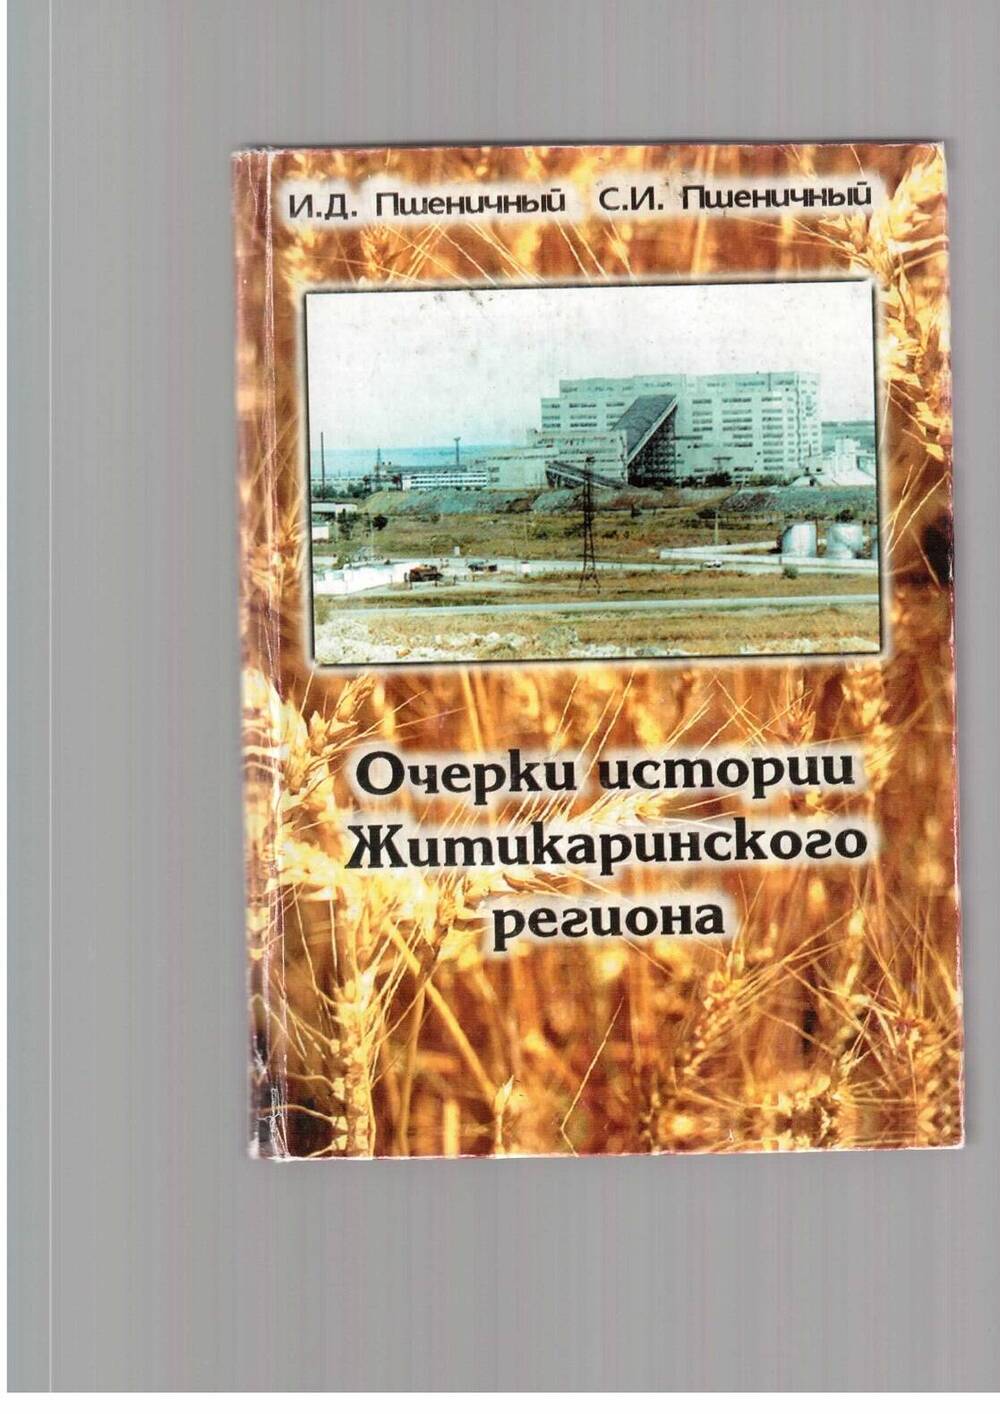 Очерки истори Житикаринск ого региона